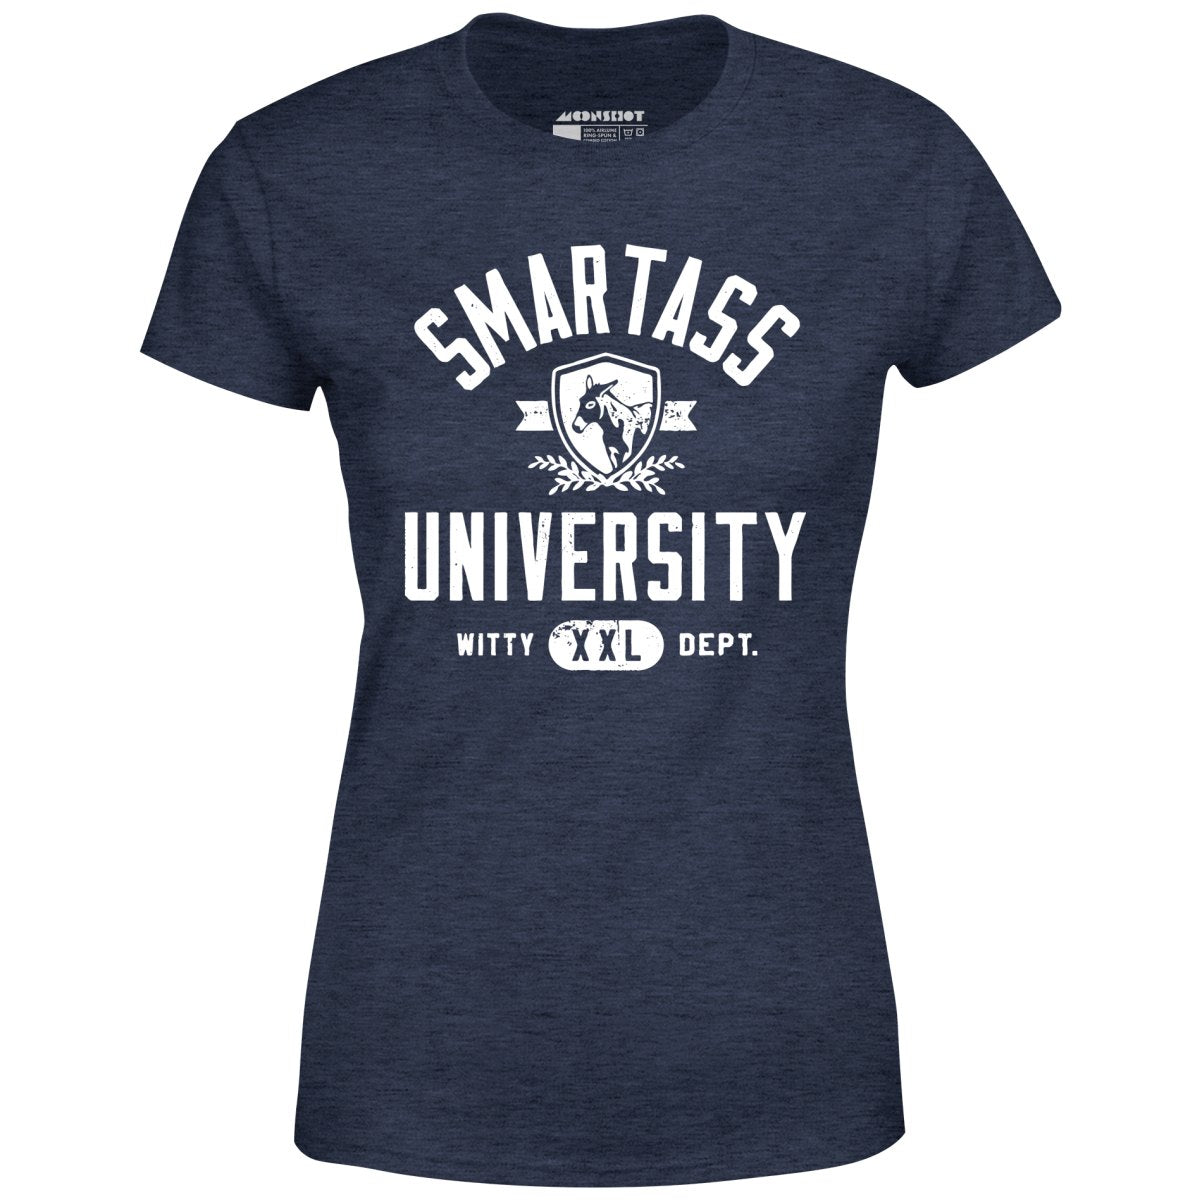 Smartass University - Women's T-Shirt